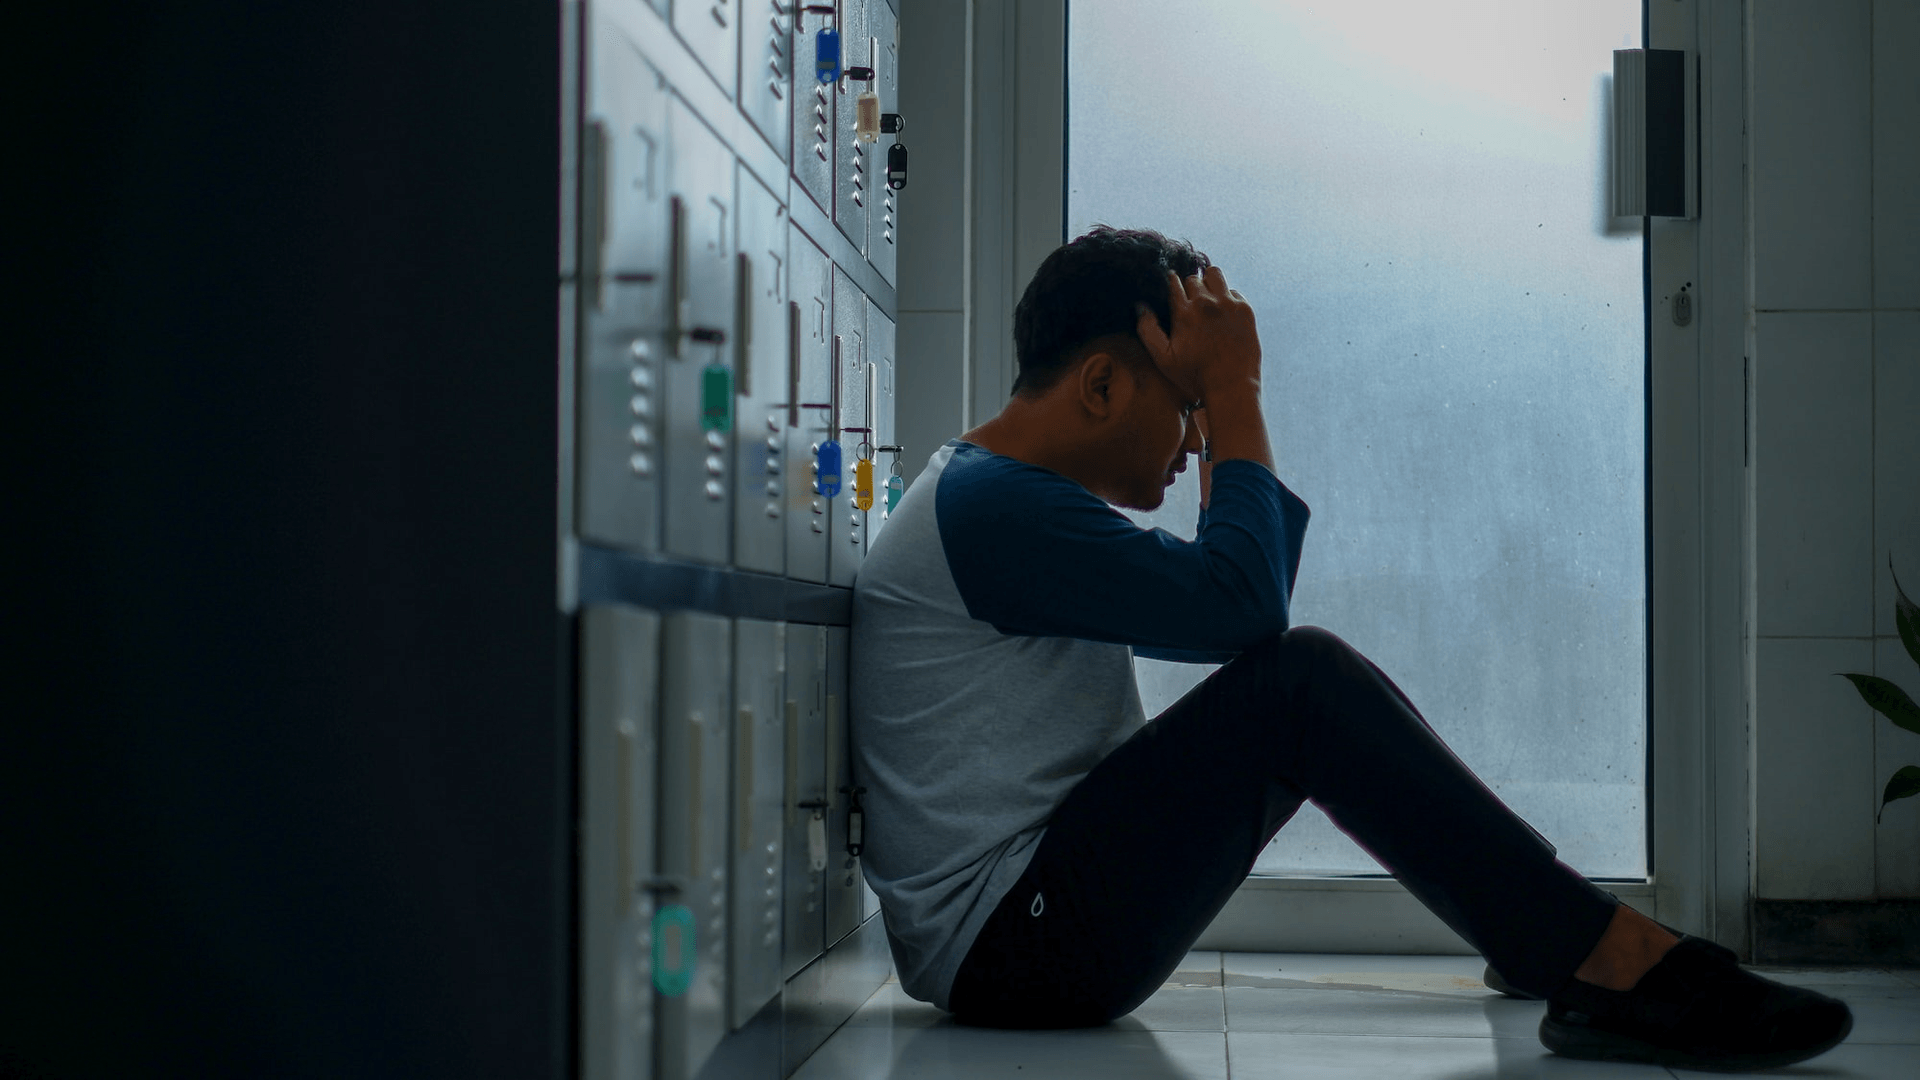 Đi làm stress quá thì chạy về "khóc với người thương": 5 mẹo an ủi "nửa kia" đang căng thẳng vì công việc 